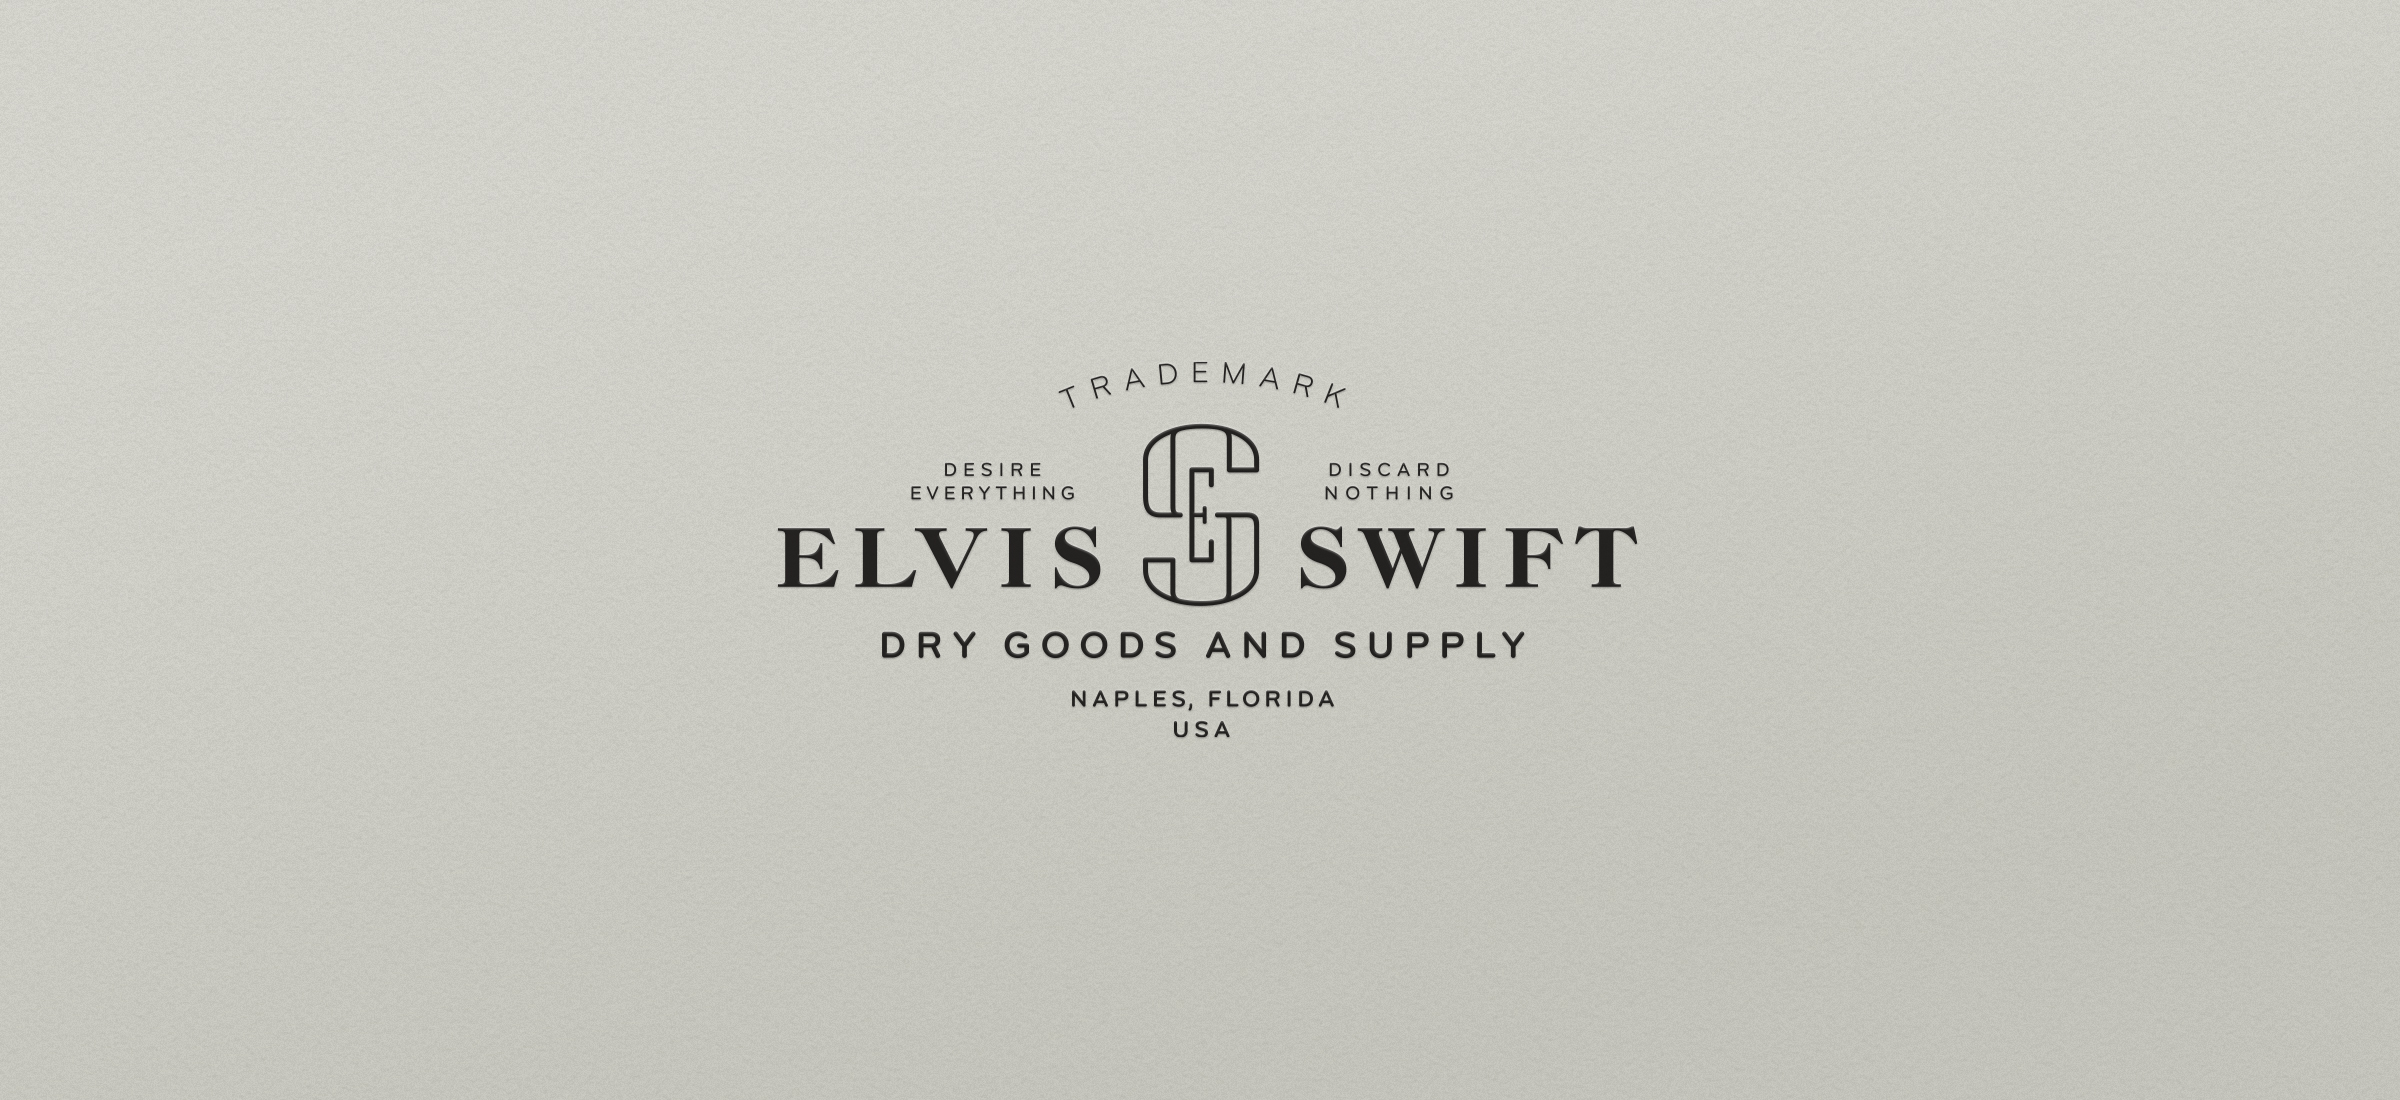 Elvis Swift Dry Goods logo by Werner Design Werks